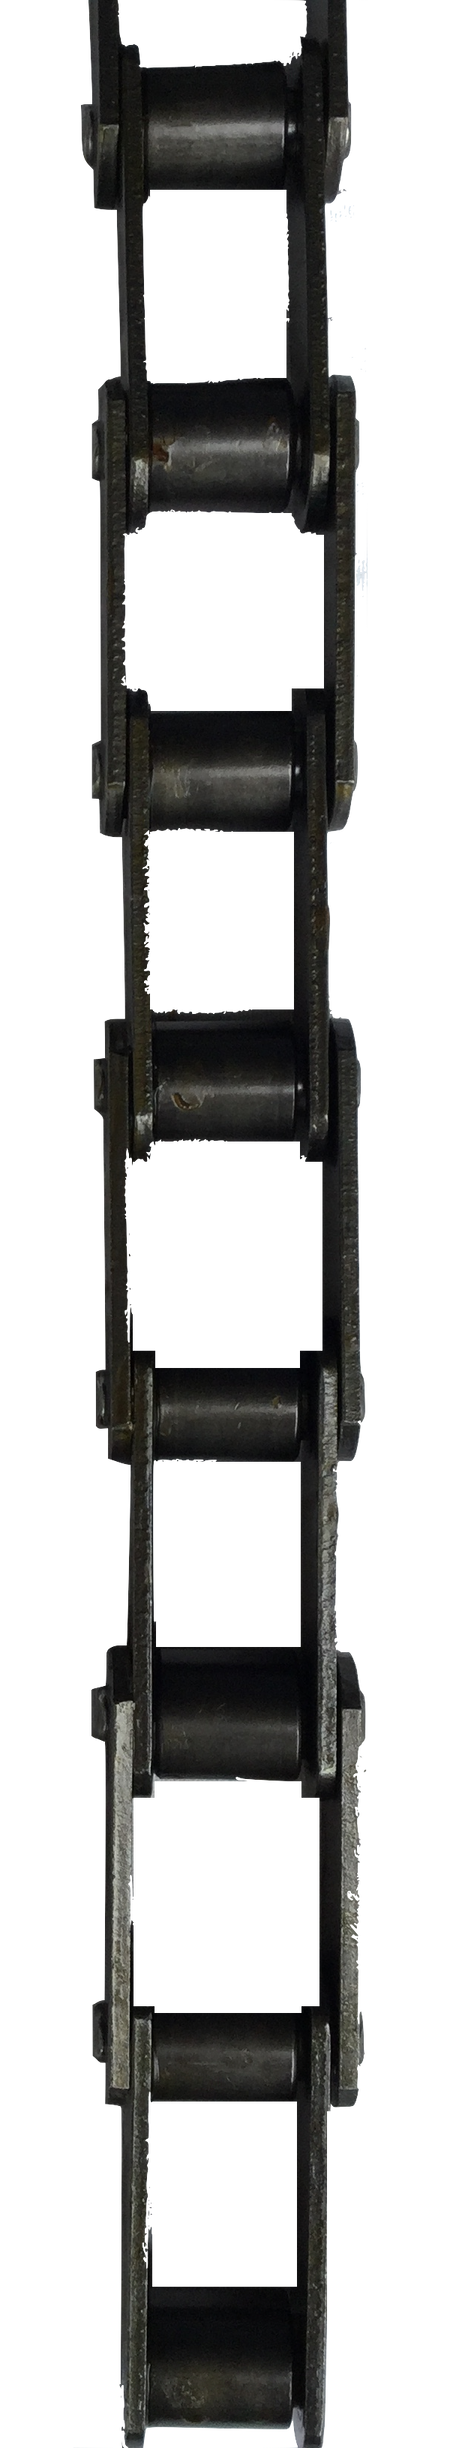 CA550 Drive Chain w/ C5EB Attachment (1.630" Pitch, 15* Angle) - Froedge Machine & Supply Co., Inc.